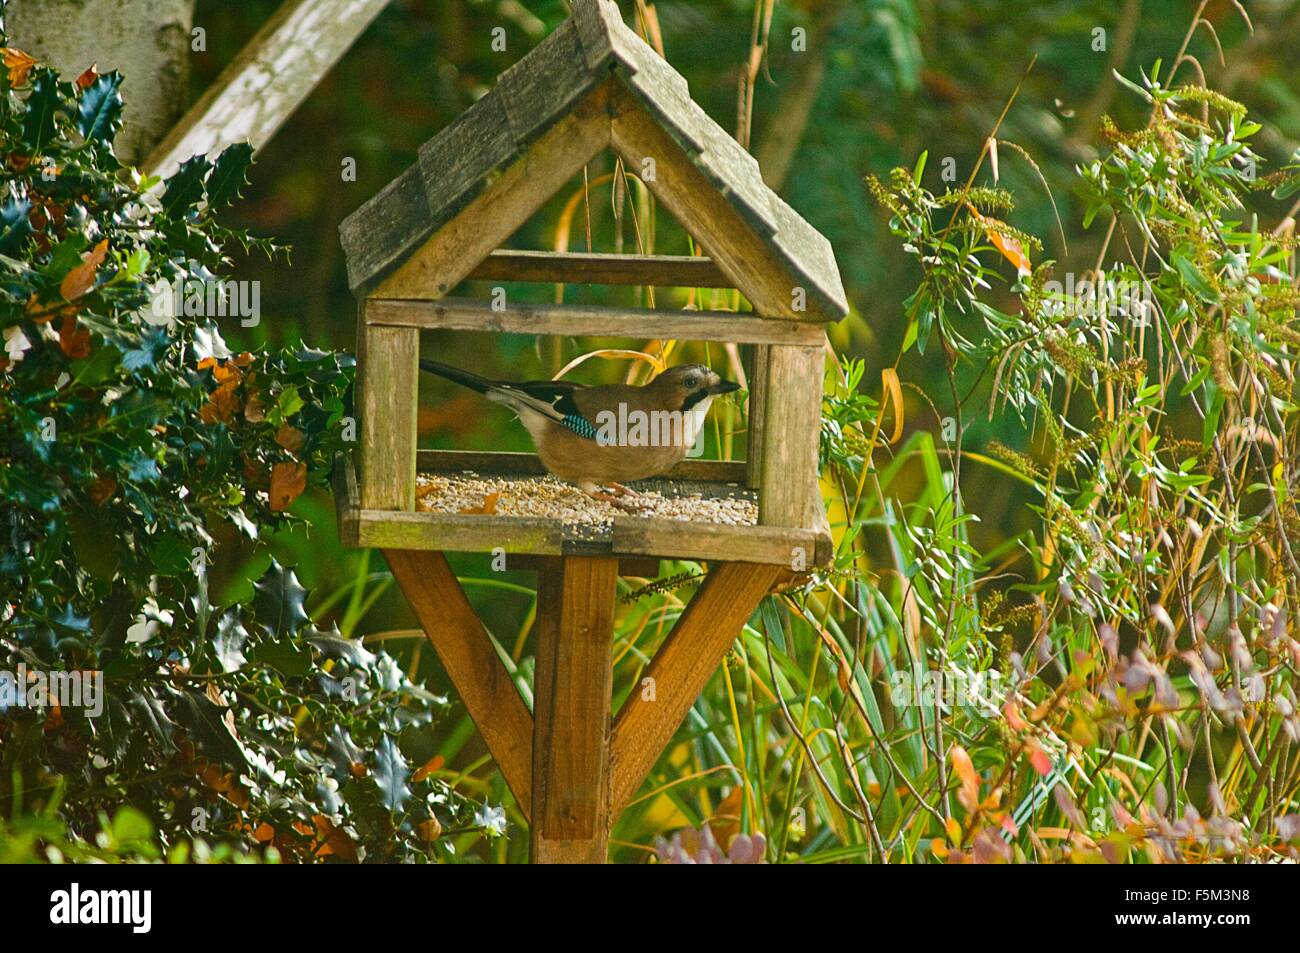 Alert bird feeding on garden birdhouse Stock Photo